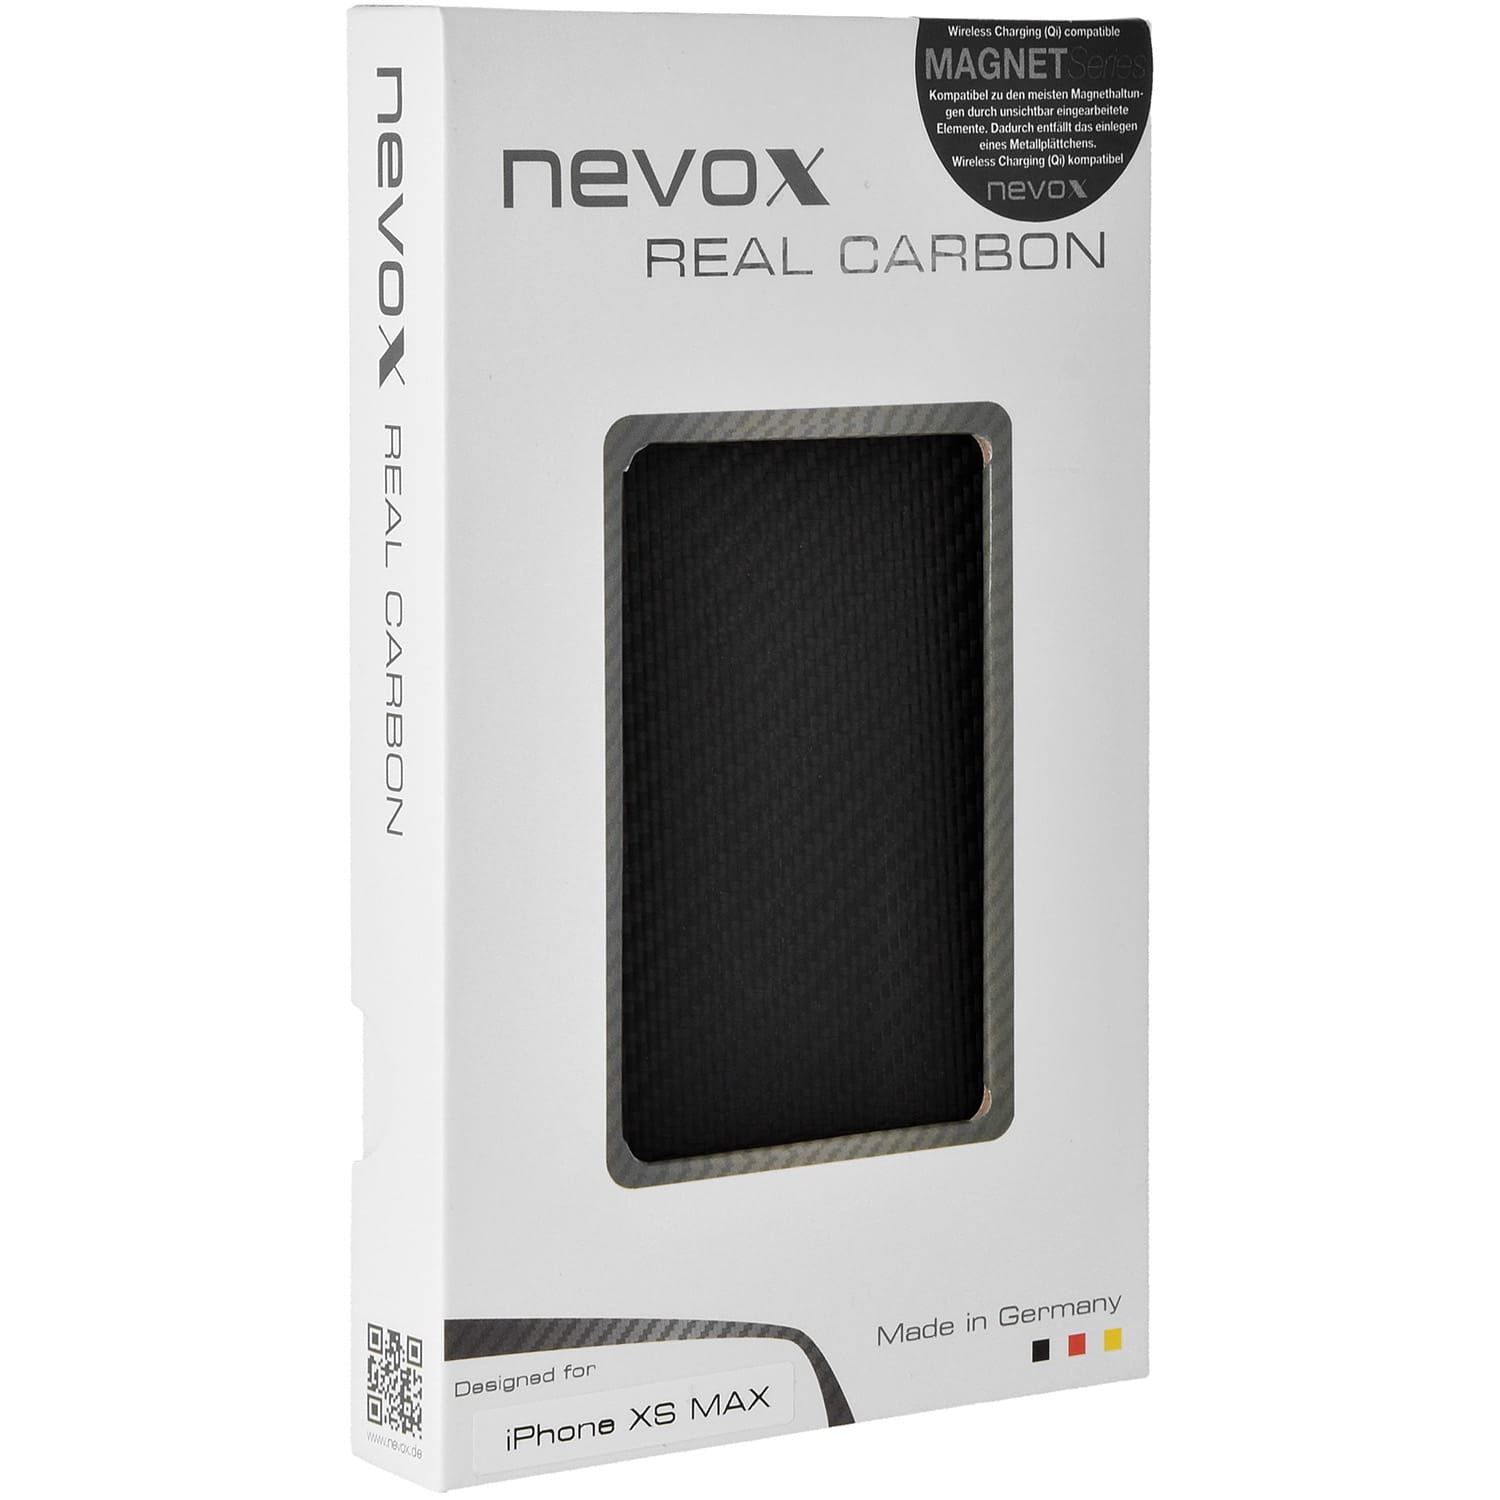 Carbon Schutzhülle Nevox Real Carbon Magnet aus Carbon- und Aramidfasern für iPhone Xs Max, schwarz.